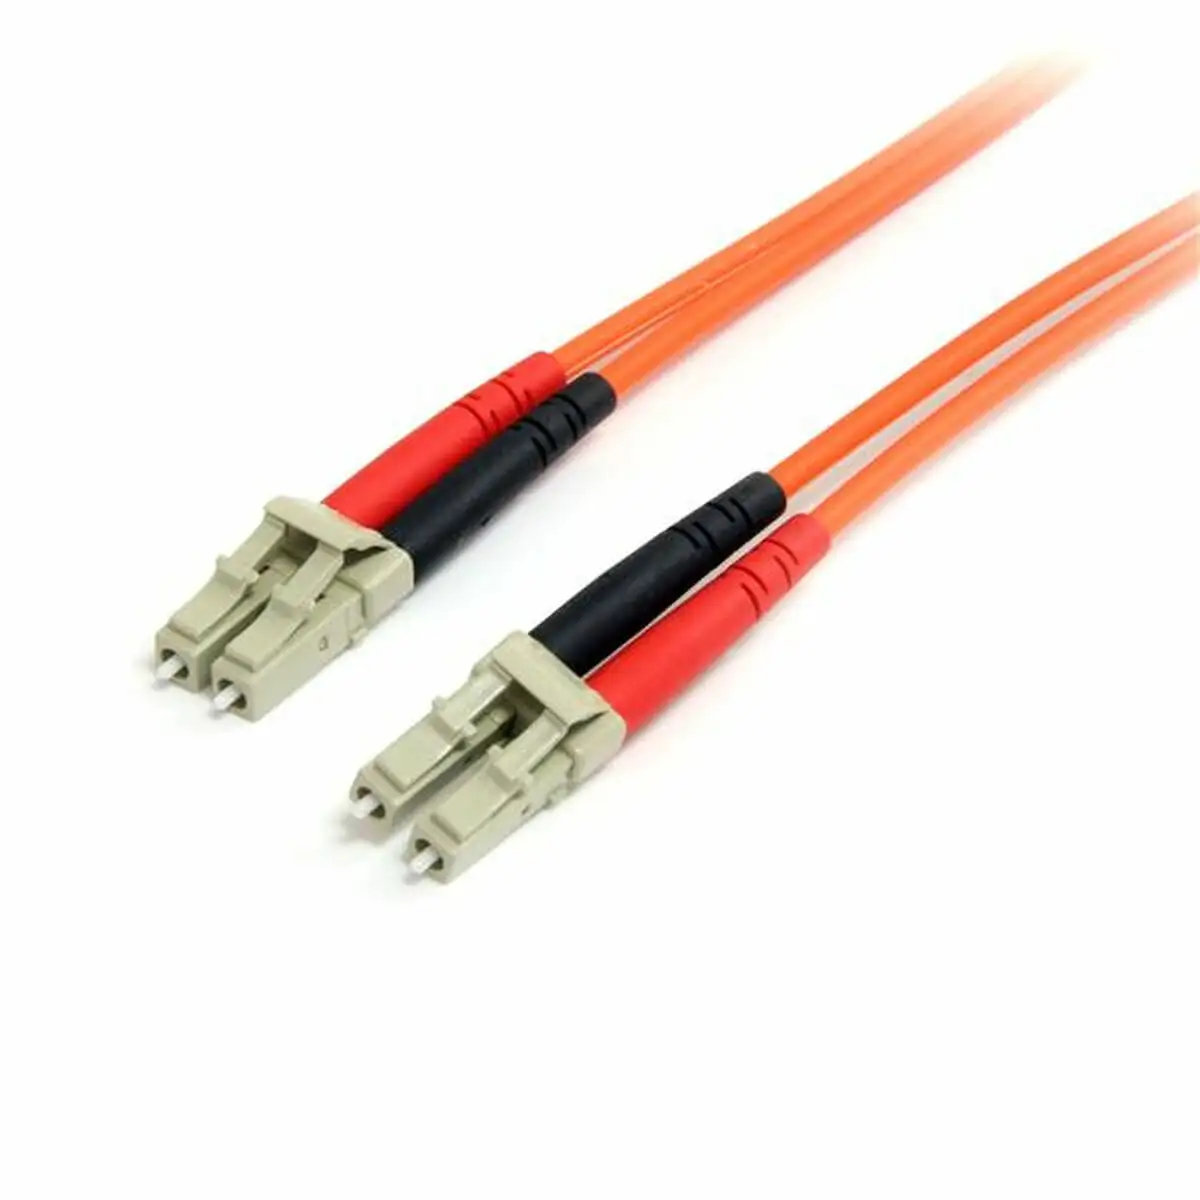 Cable a fibre optique startech duplex 2 m_8090. DIAYTAR SENEGAL - Votre Destination Shopping de Confiance. Naviguez à travers notre boutique en ligne et profitez d'une sélection soigneusement choisie de produits qui répondent à toutes vos exigences.